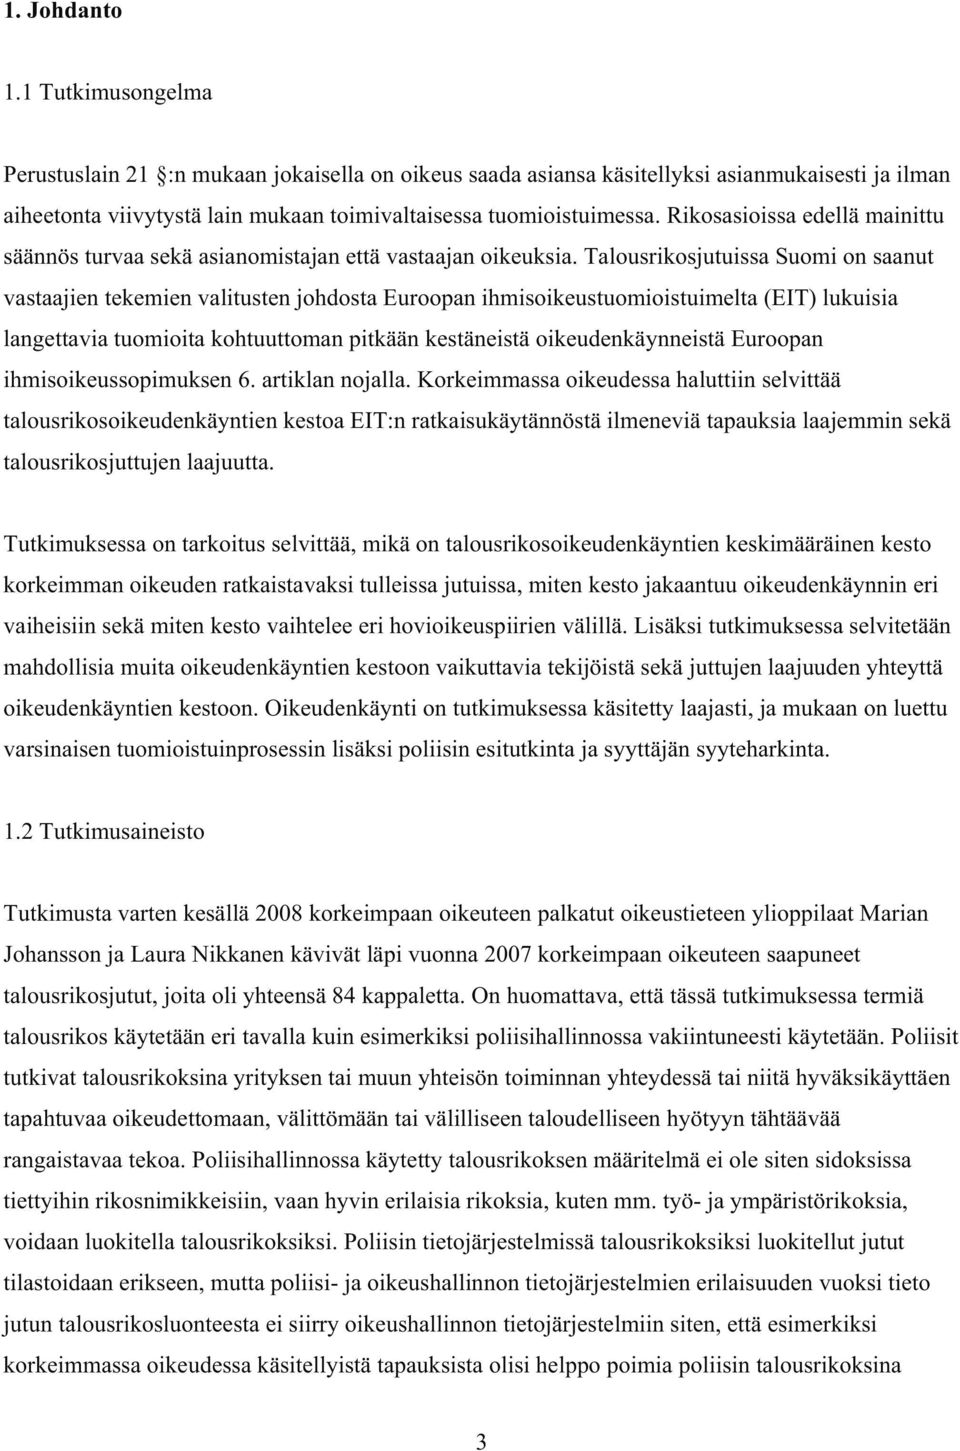 Talousrikosjutuissa Suomi on saanut vastaajien tekemien valitusten johdosta Euroopan ihmisoikeustuomioistuimelta (EIT) lukuisia langettavia tuomioita kohtuuttoman pitkään kestäneistä